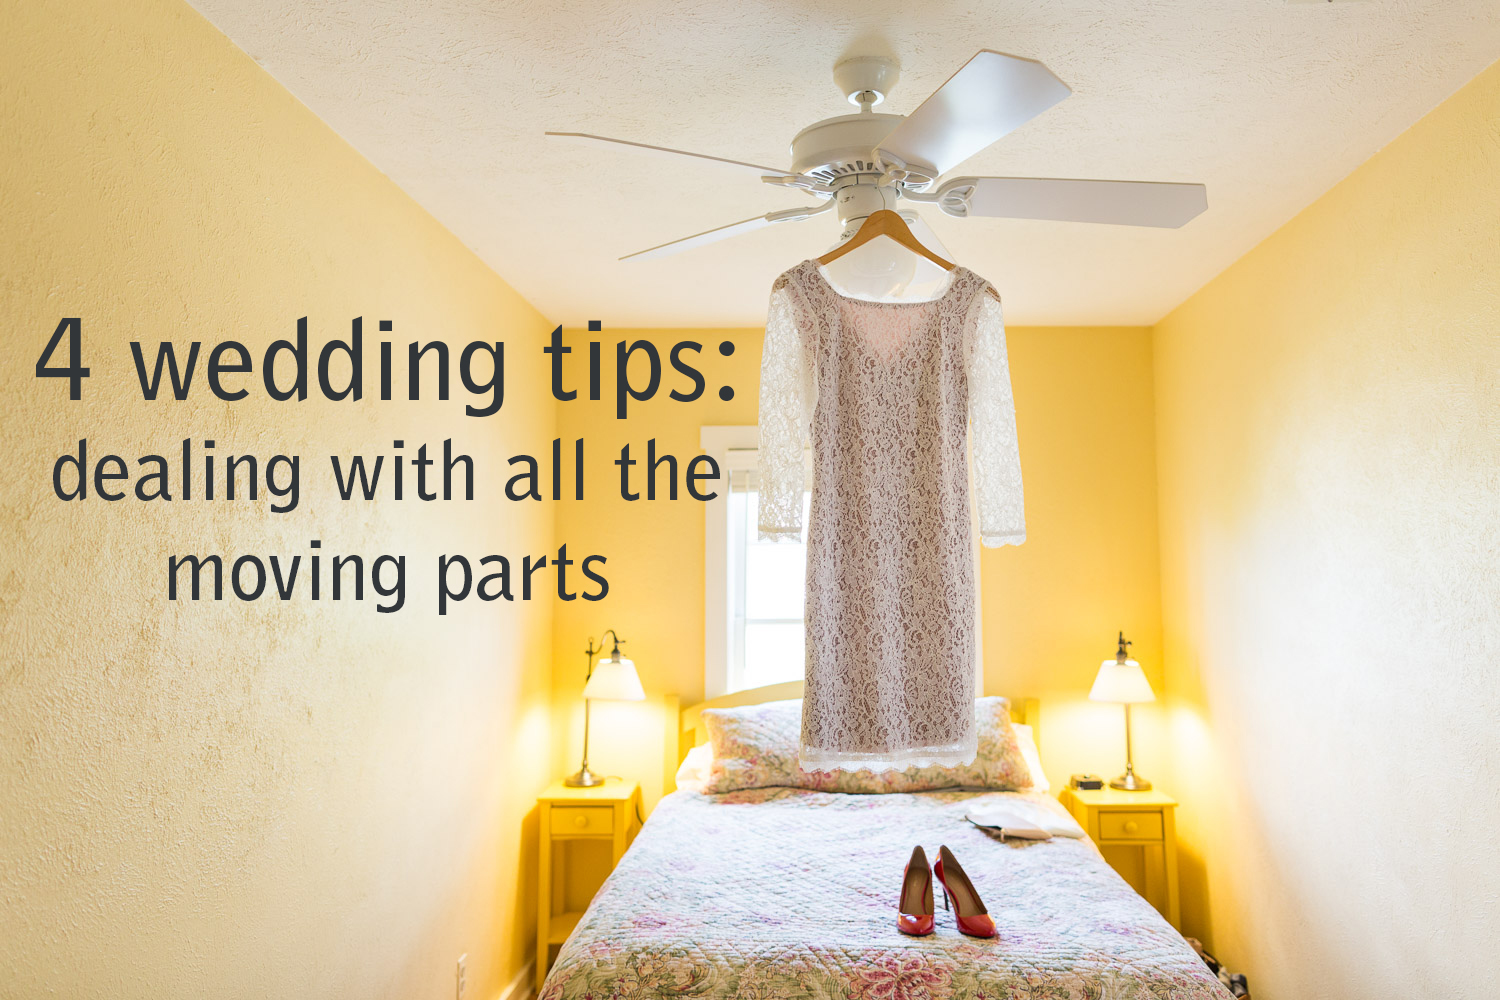 wedding tips